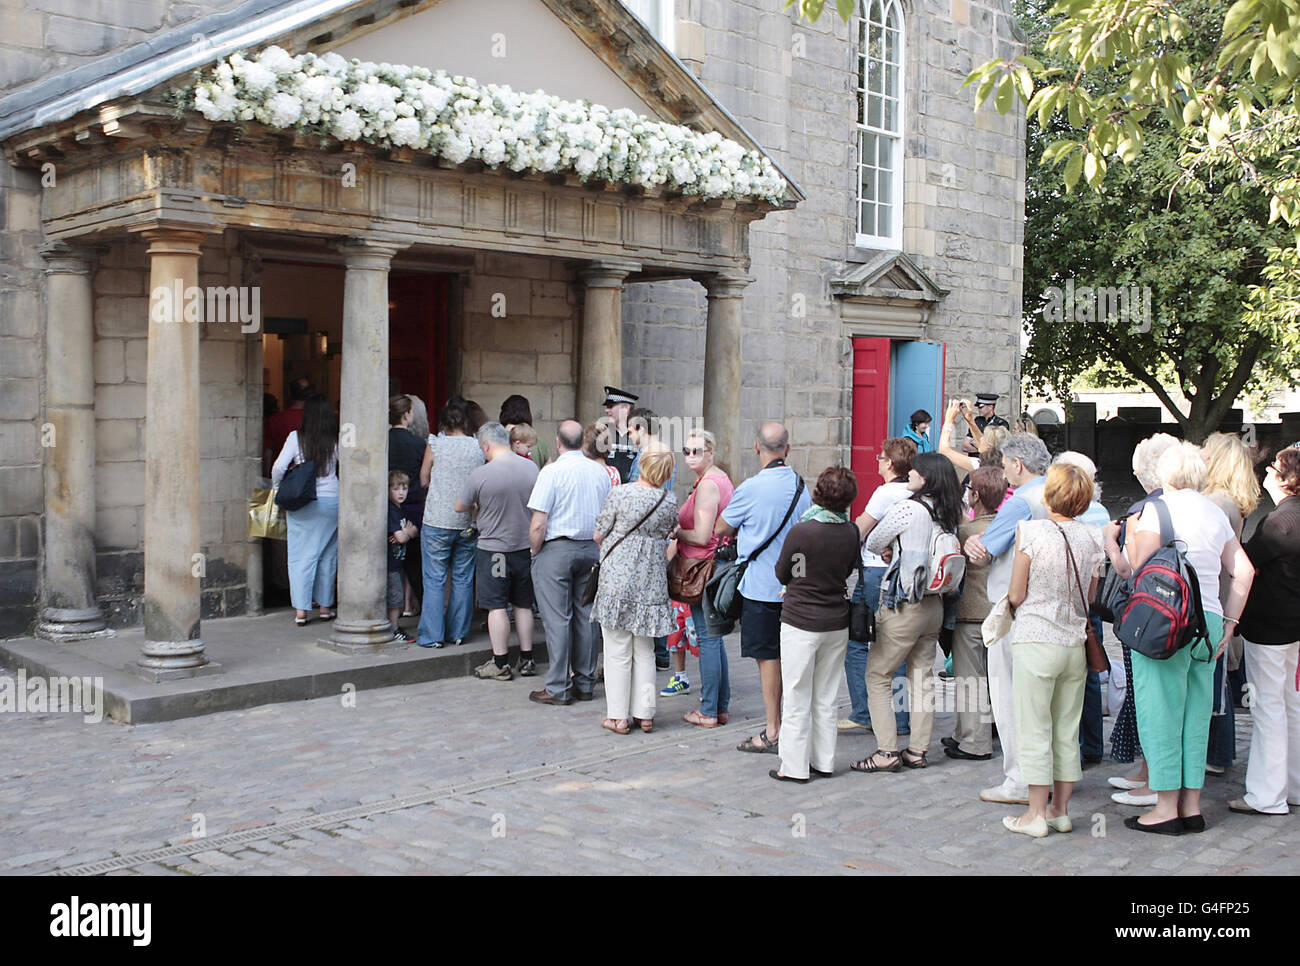 Menschenmassen stehen Schlange, um in Canongate Kirk in Edinburgh zu schauen, wo die Hochzeit von Zara Phillips und Mike Tindall stattfand. Stockfoto